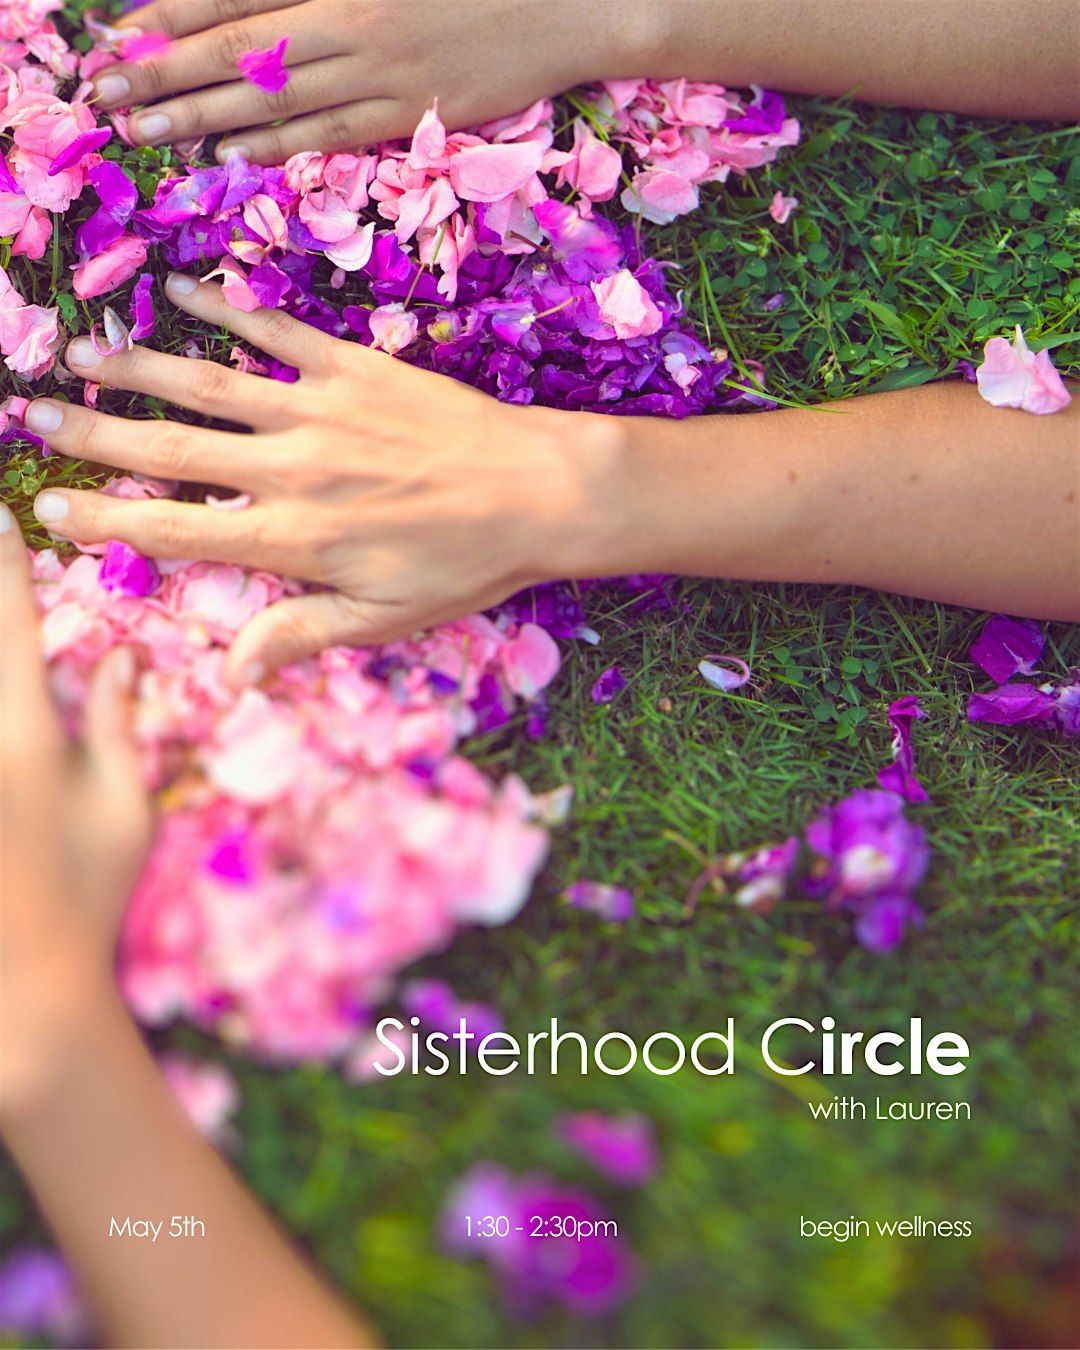 Sisterhood Circle by Lauren